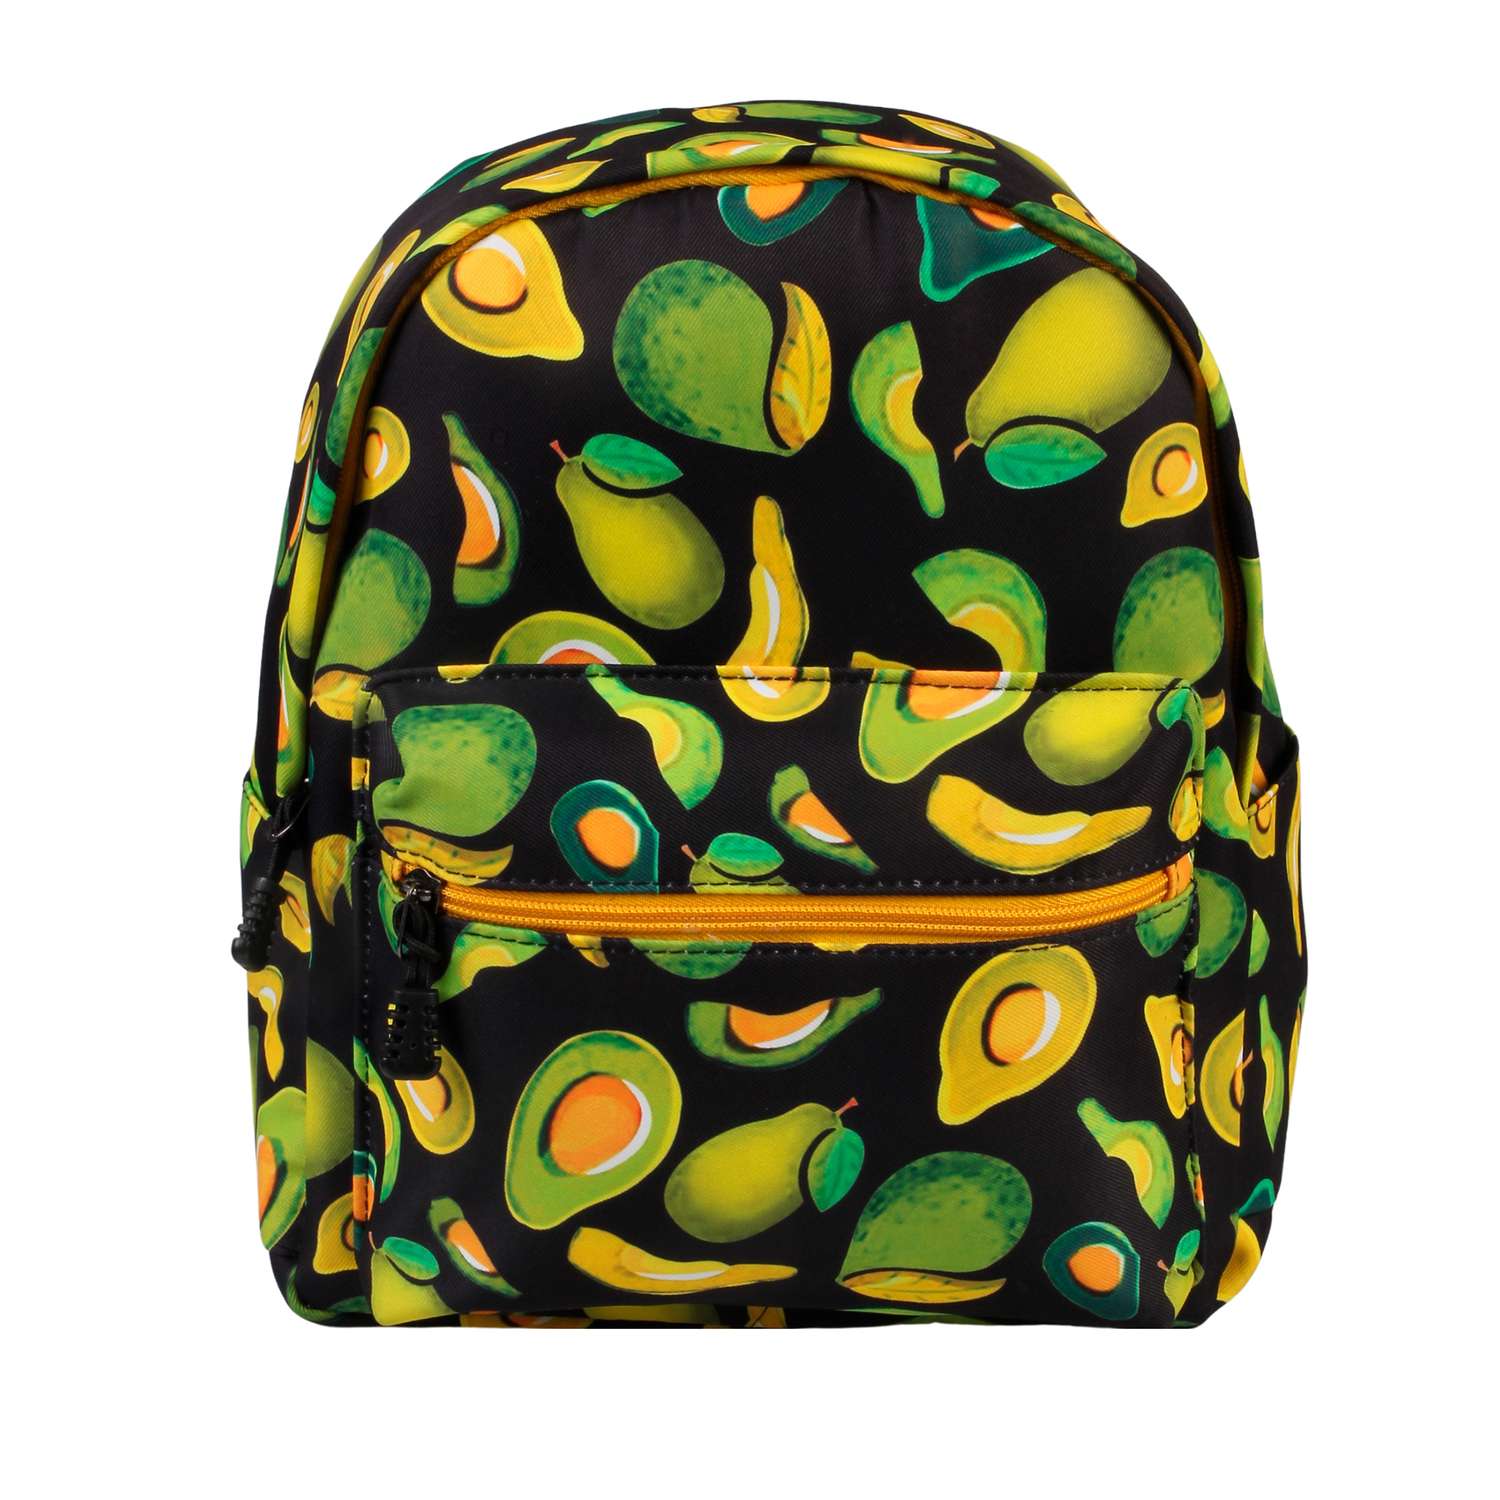 Рюкзак Little Mania черный Авокадо желто-зеленый - фото 1